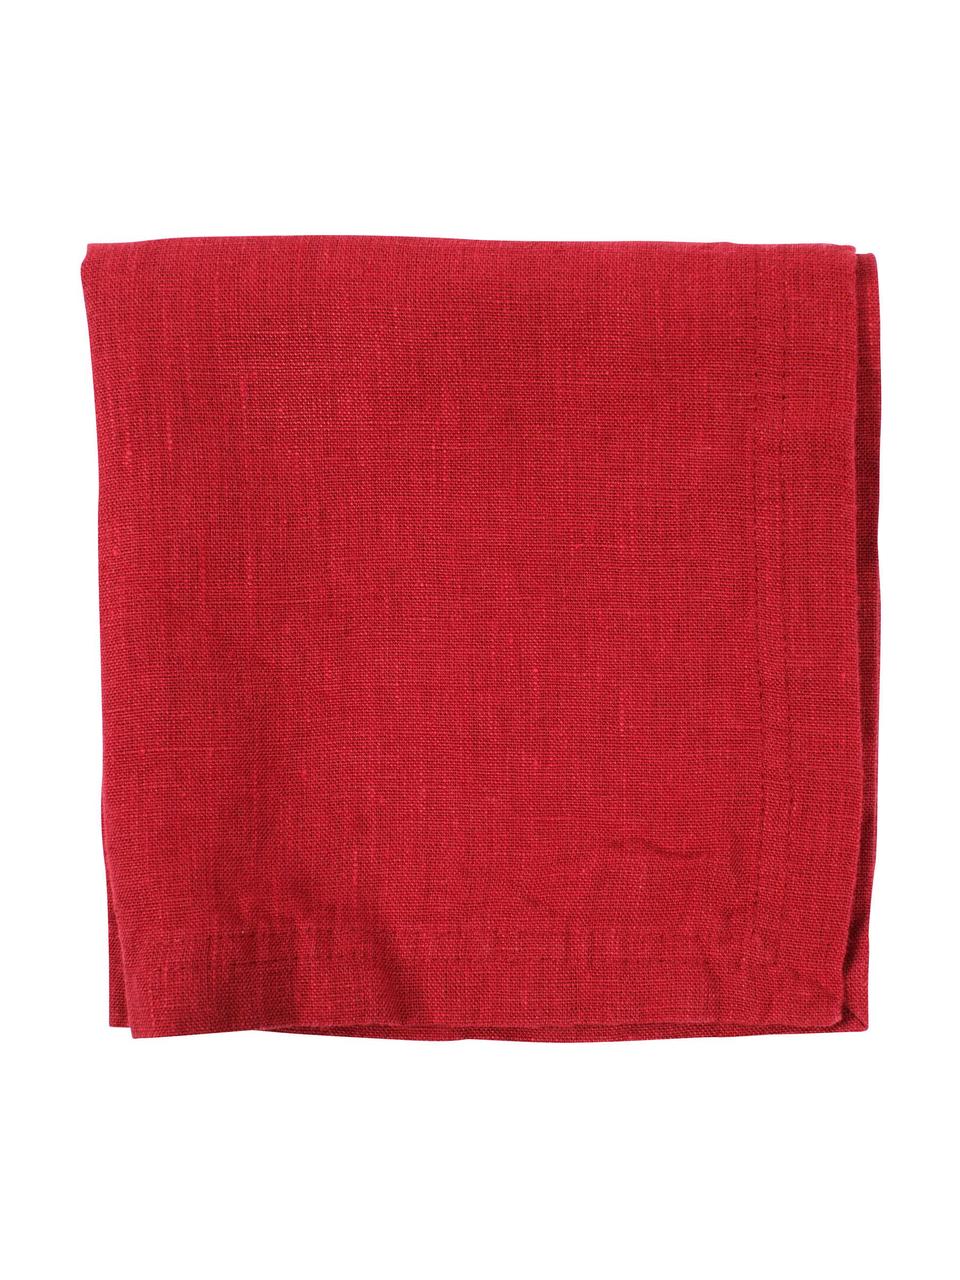 Serviette pur lin rouge Basic, 2 pièces, Lin, Rouge, larg. 35 x long. 35 cm